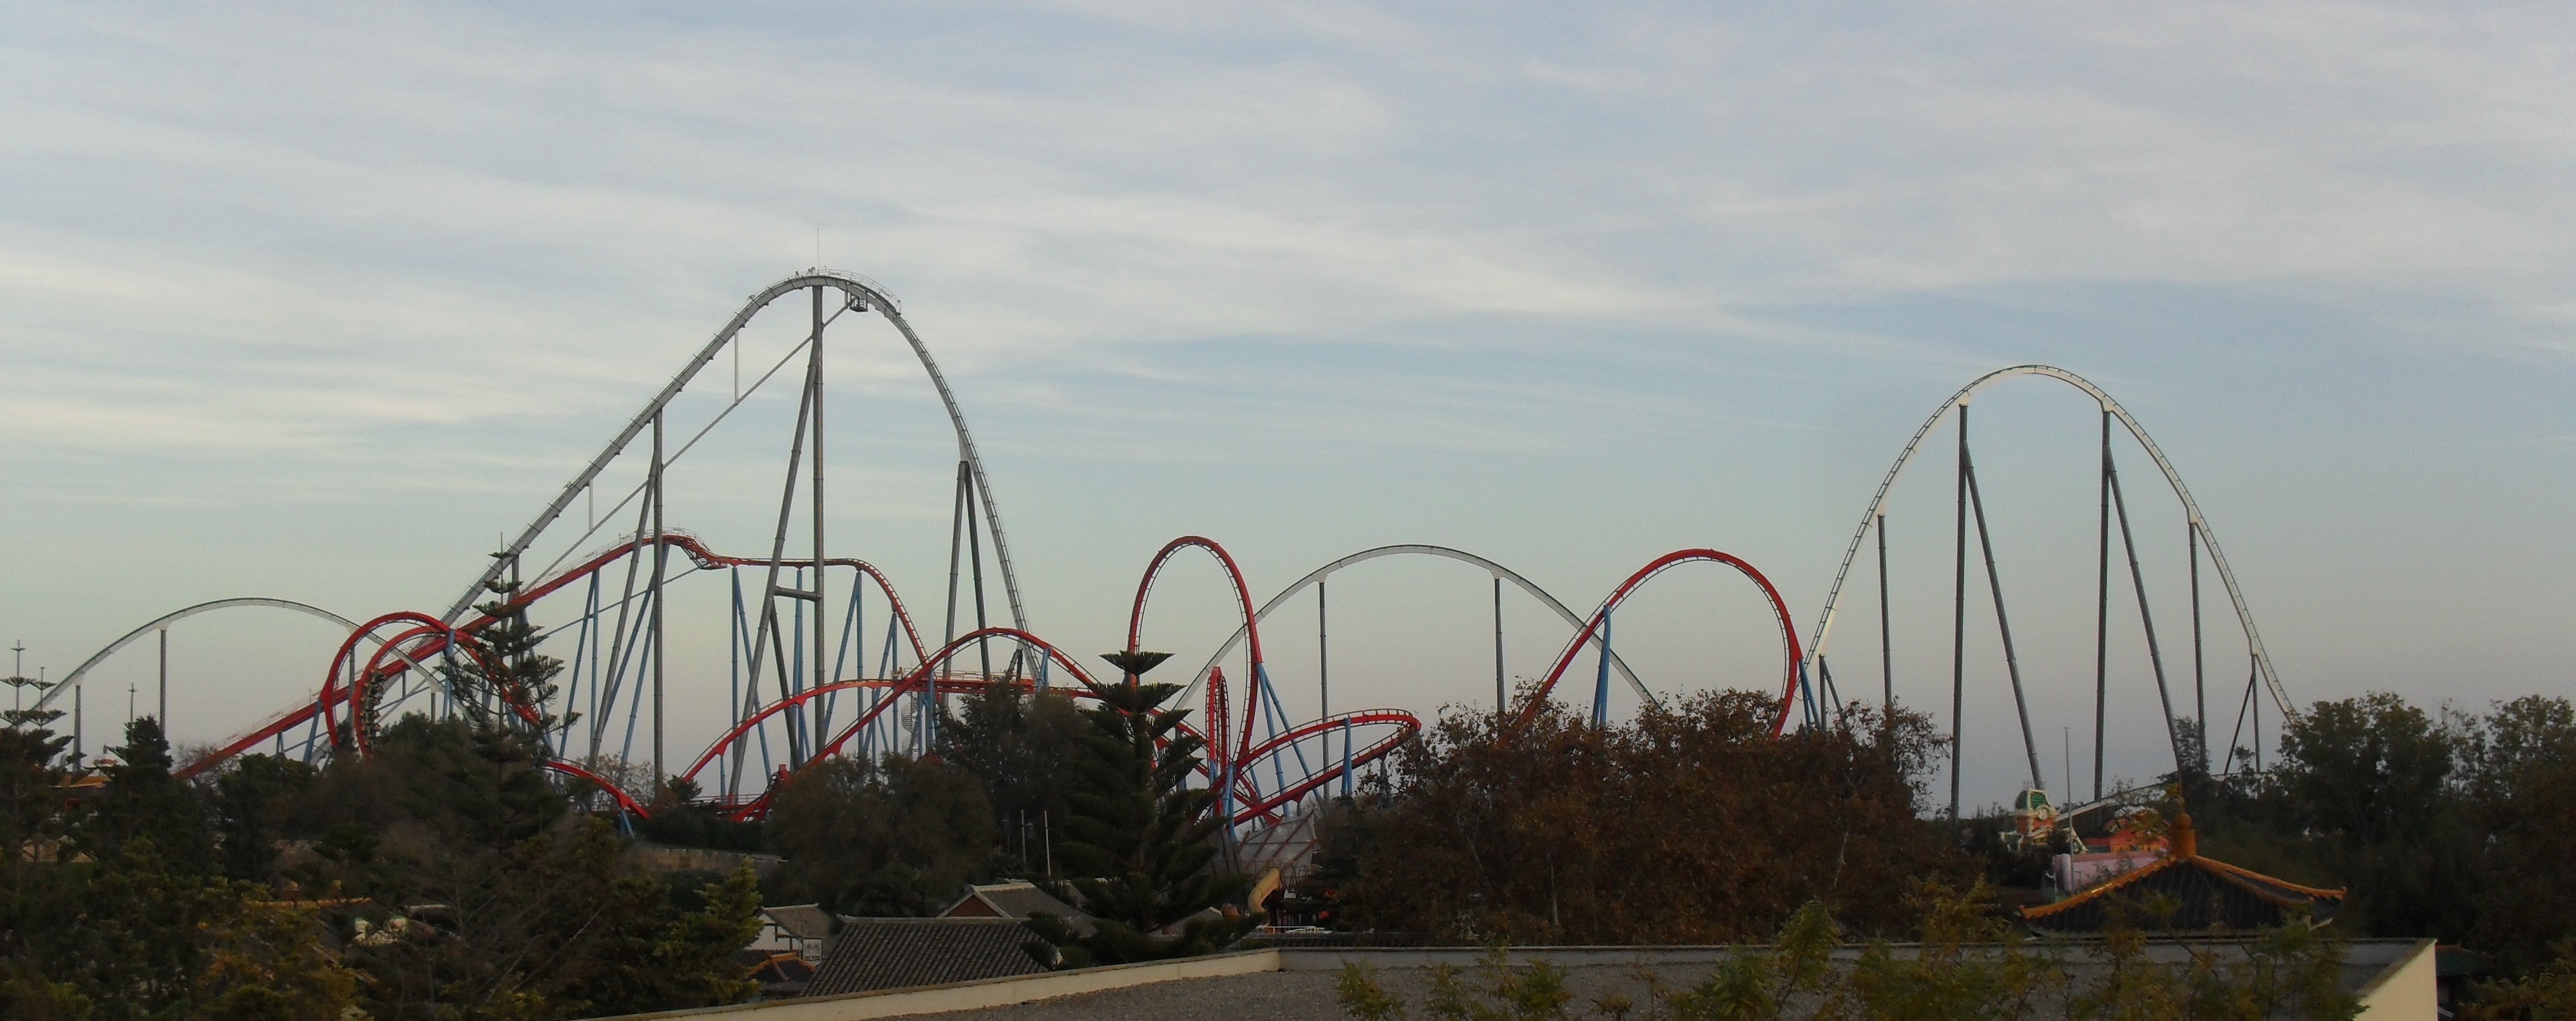 Roller coasters at Port Aventura.JPG